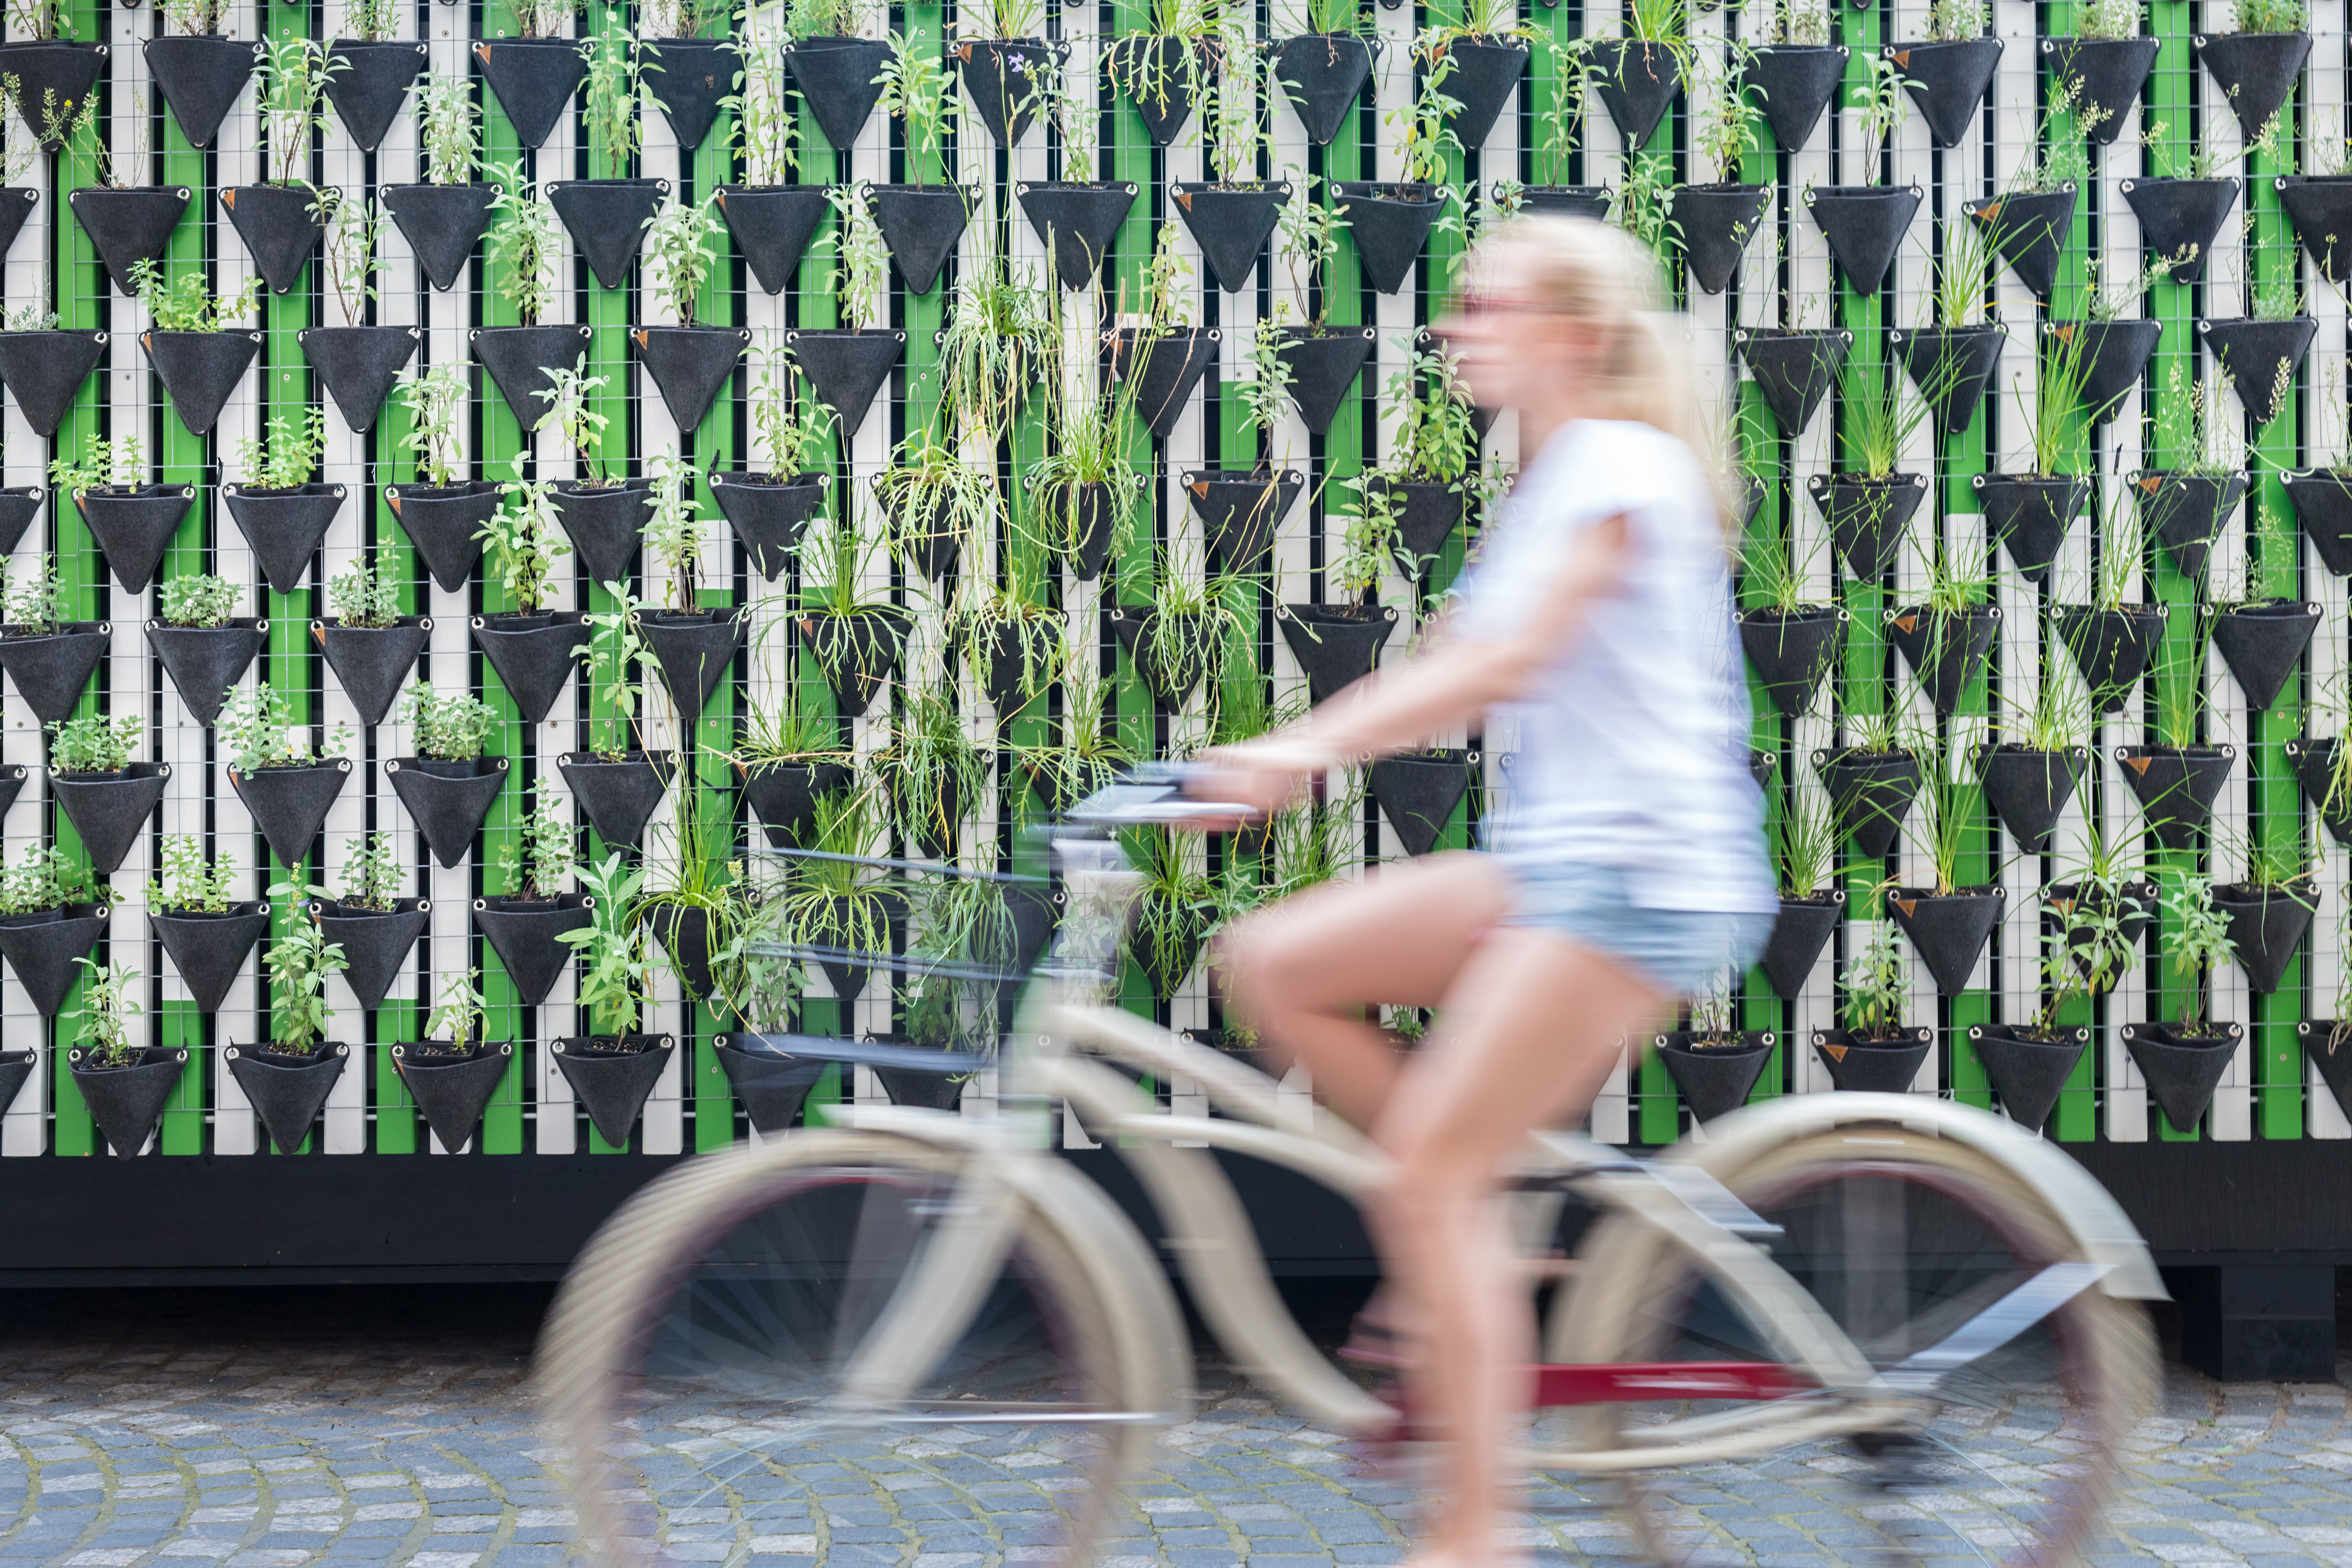 Zamegljena slika ženske osebe v svetlih kratkih hlačah in majici, ki se vozi na belem kolesu, za ozadje pa so postavljena čez celo stene rjava korita z rožami in zeleno bele lesene deščice. 